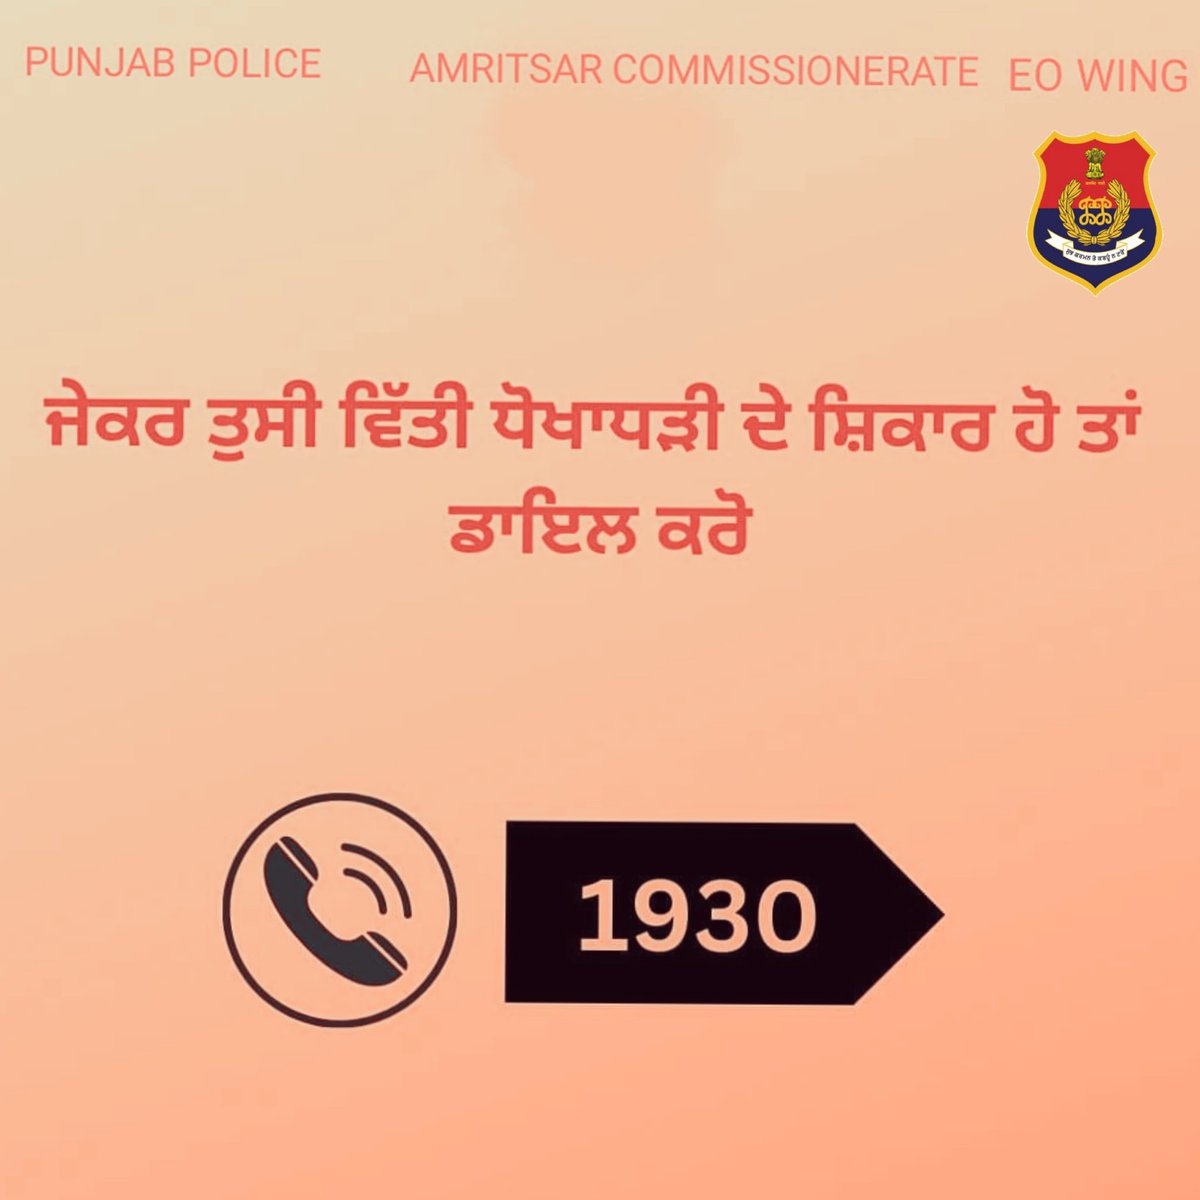 BeAlert #besafe#fake #trap #scam #viralpost #PunjabPolice #Amritsarpolice